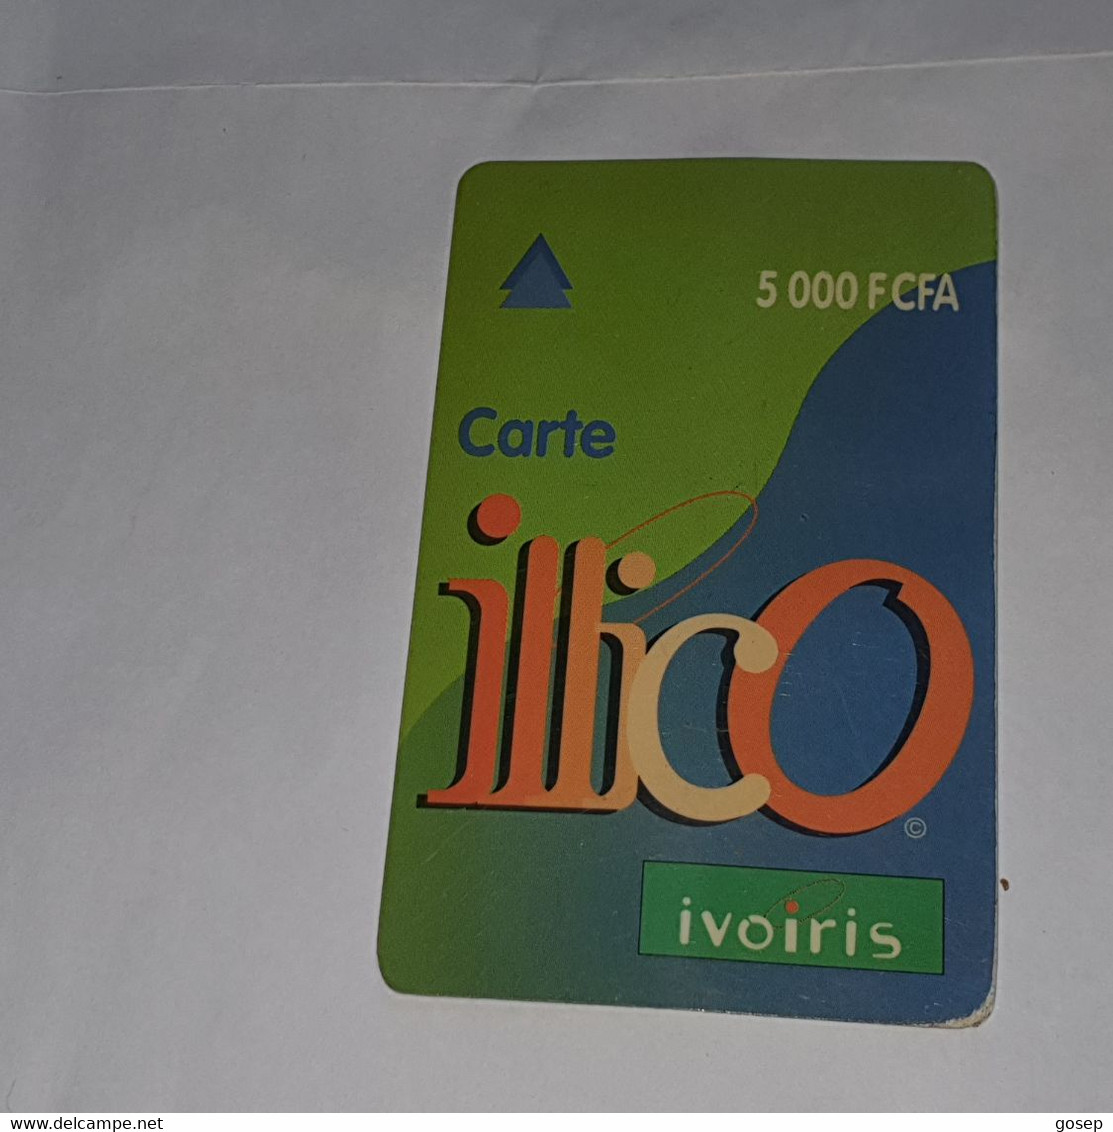 Ivory Coast-(CI-ILL-REF-0004B/2)-carte Lllico(10)-(5.000fcfa)-(96-08-44-89-85-23-00)-used Card+1card Prepiad Free - Costa De Marfil